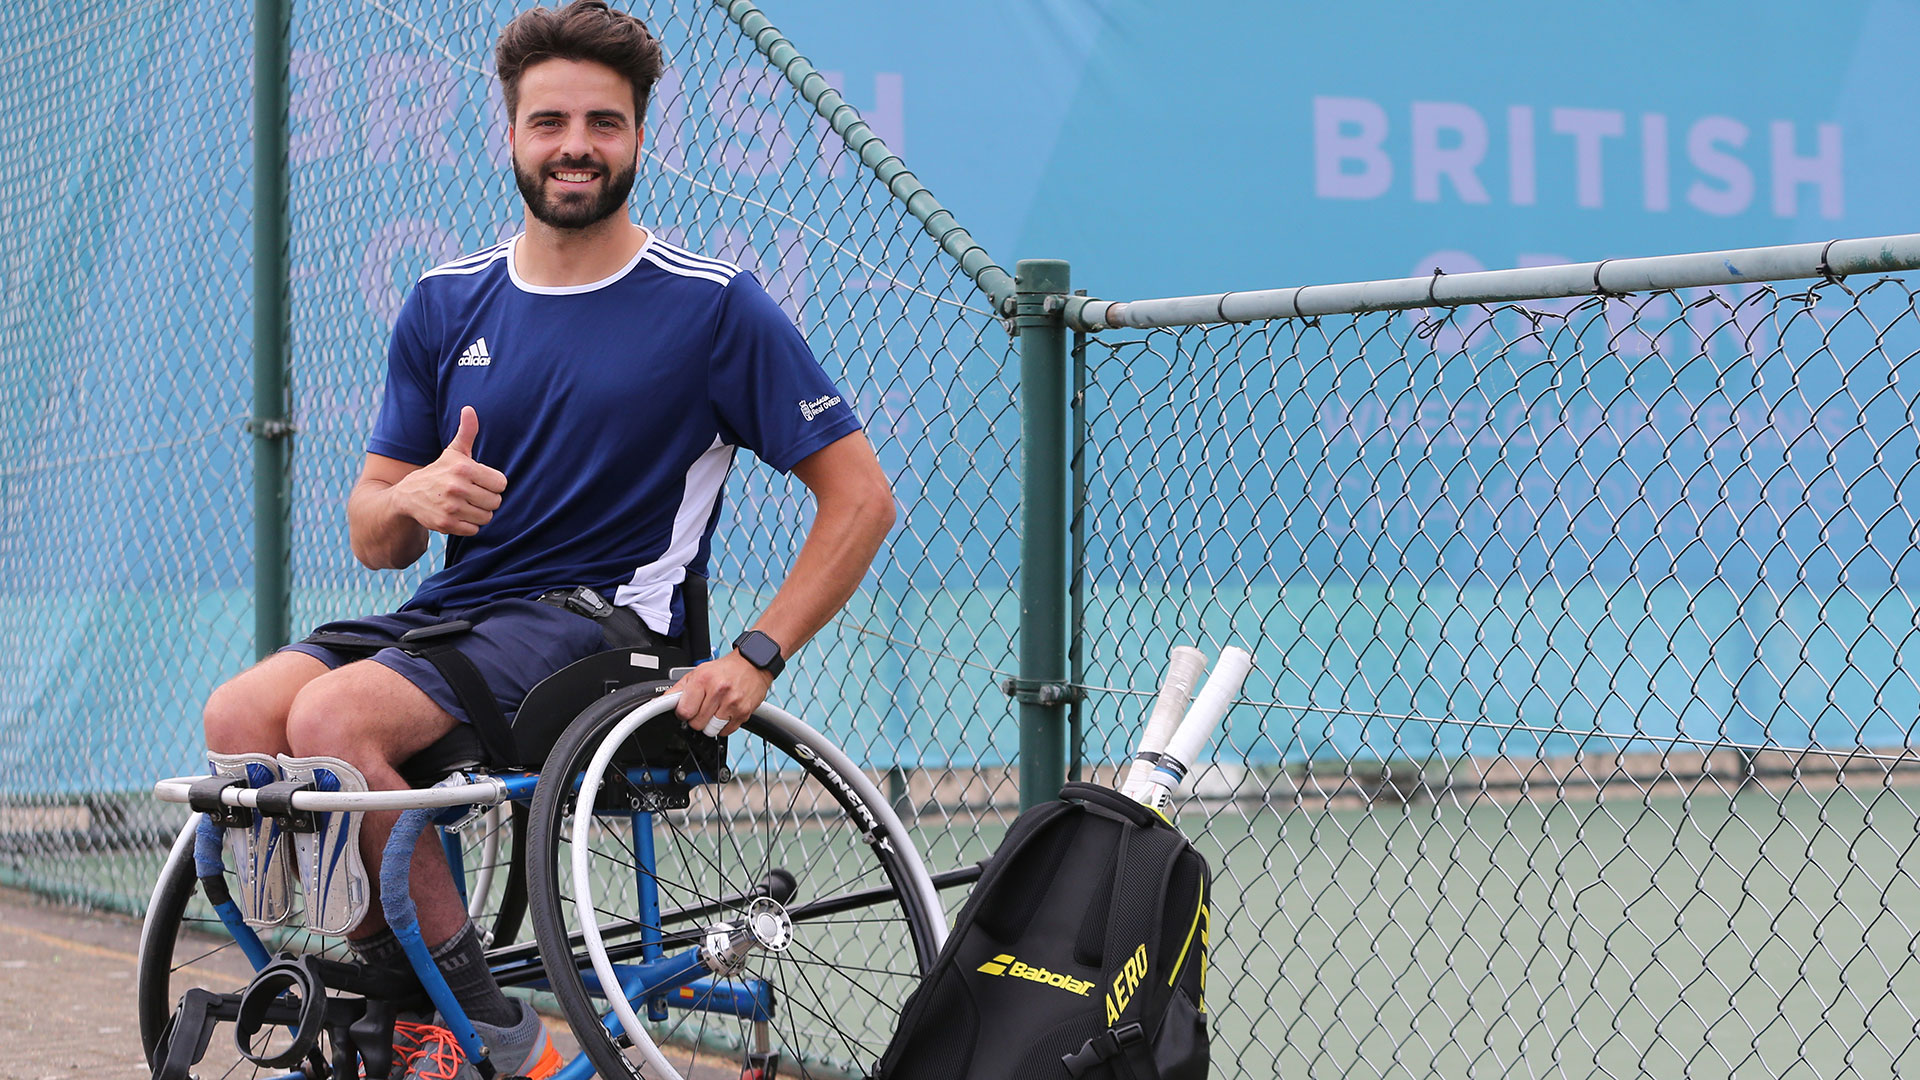 Pelayo Novo se dedicó al tenis en silla de ruedas tras su accidente (Gettyimages)